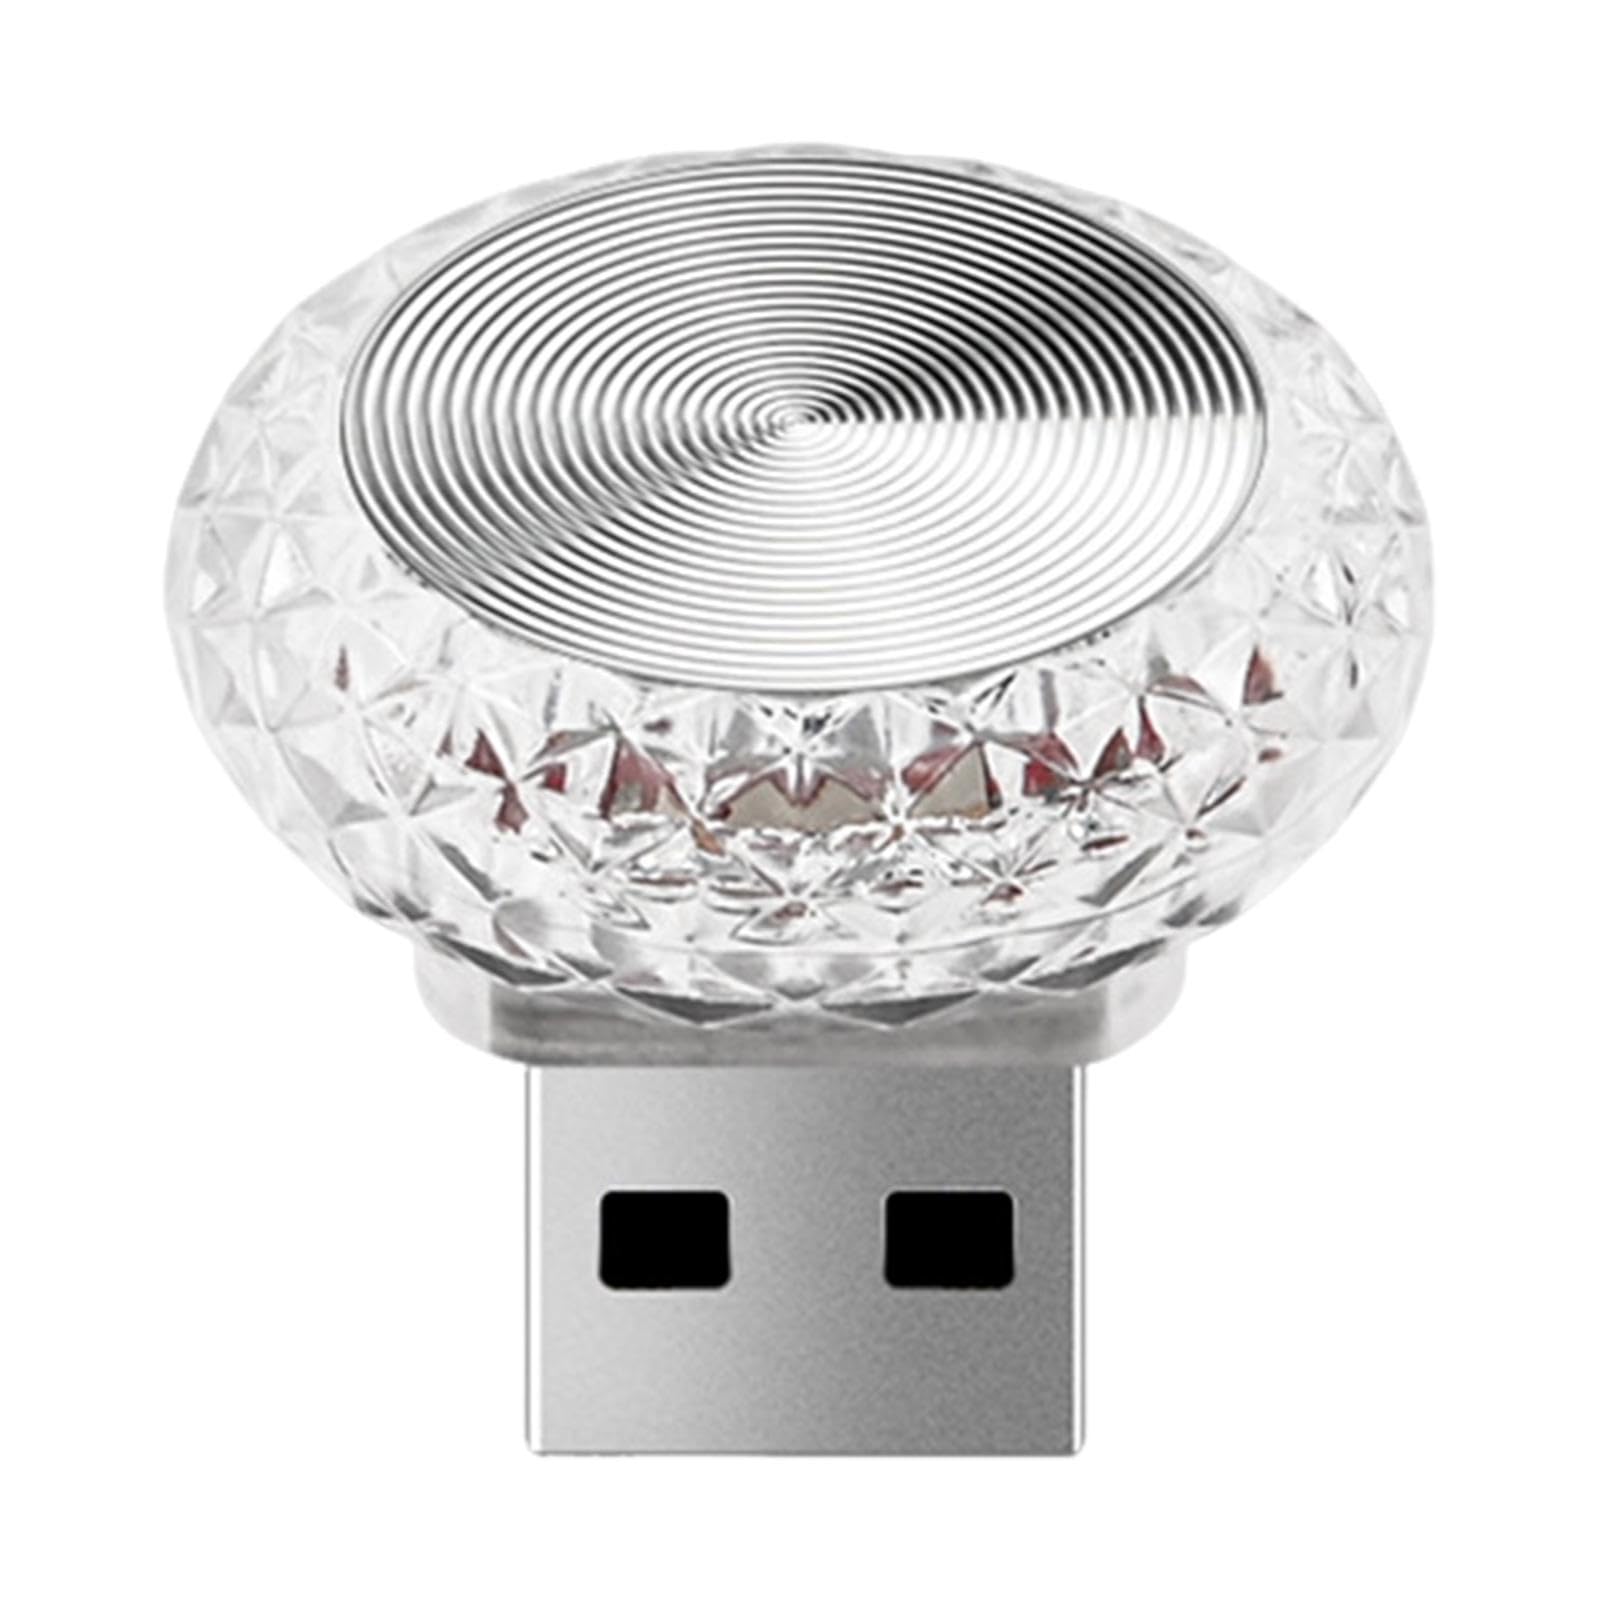 Walopola USB-LED-Auto-Innendekorationsleuchten | Buntes LED- -USB-Atmosphärenlicht,Kabellose LED-Leuchten für die Atmosphäre im Kofferraum Ihres Autos von Walopola